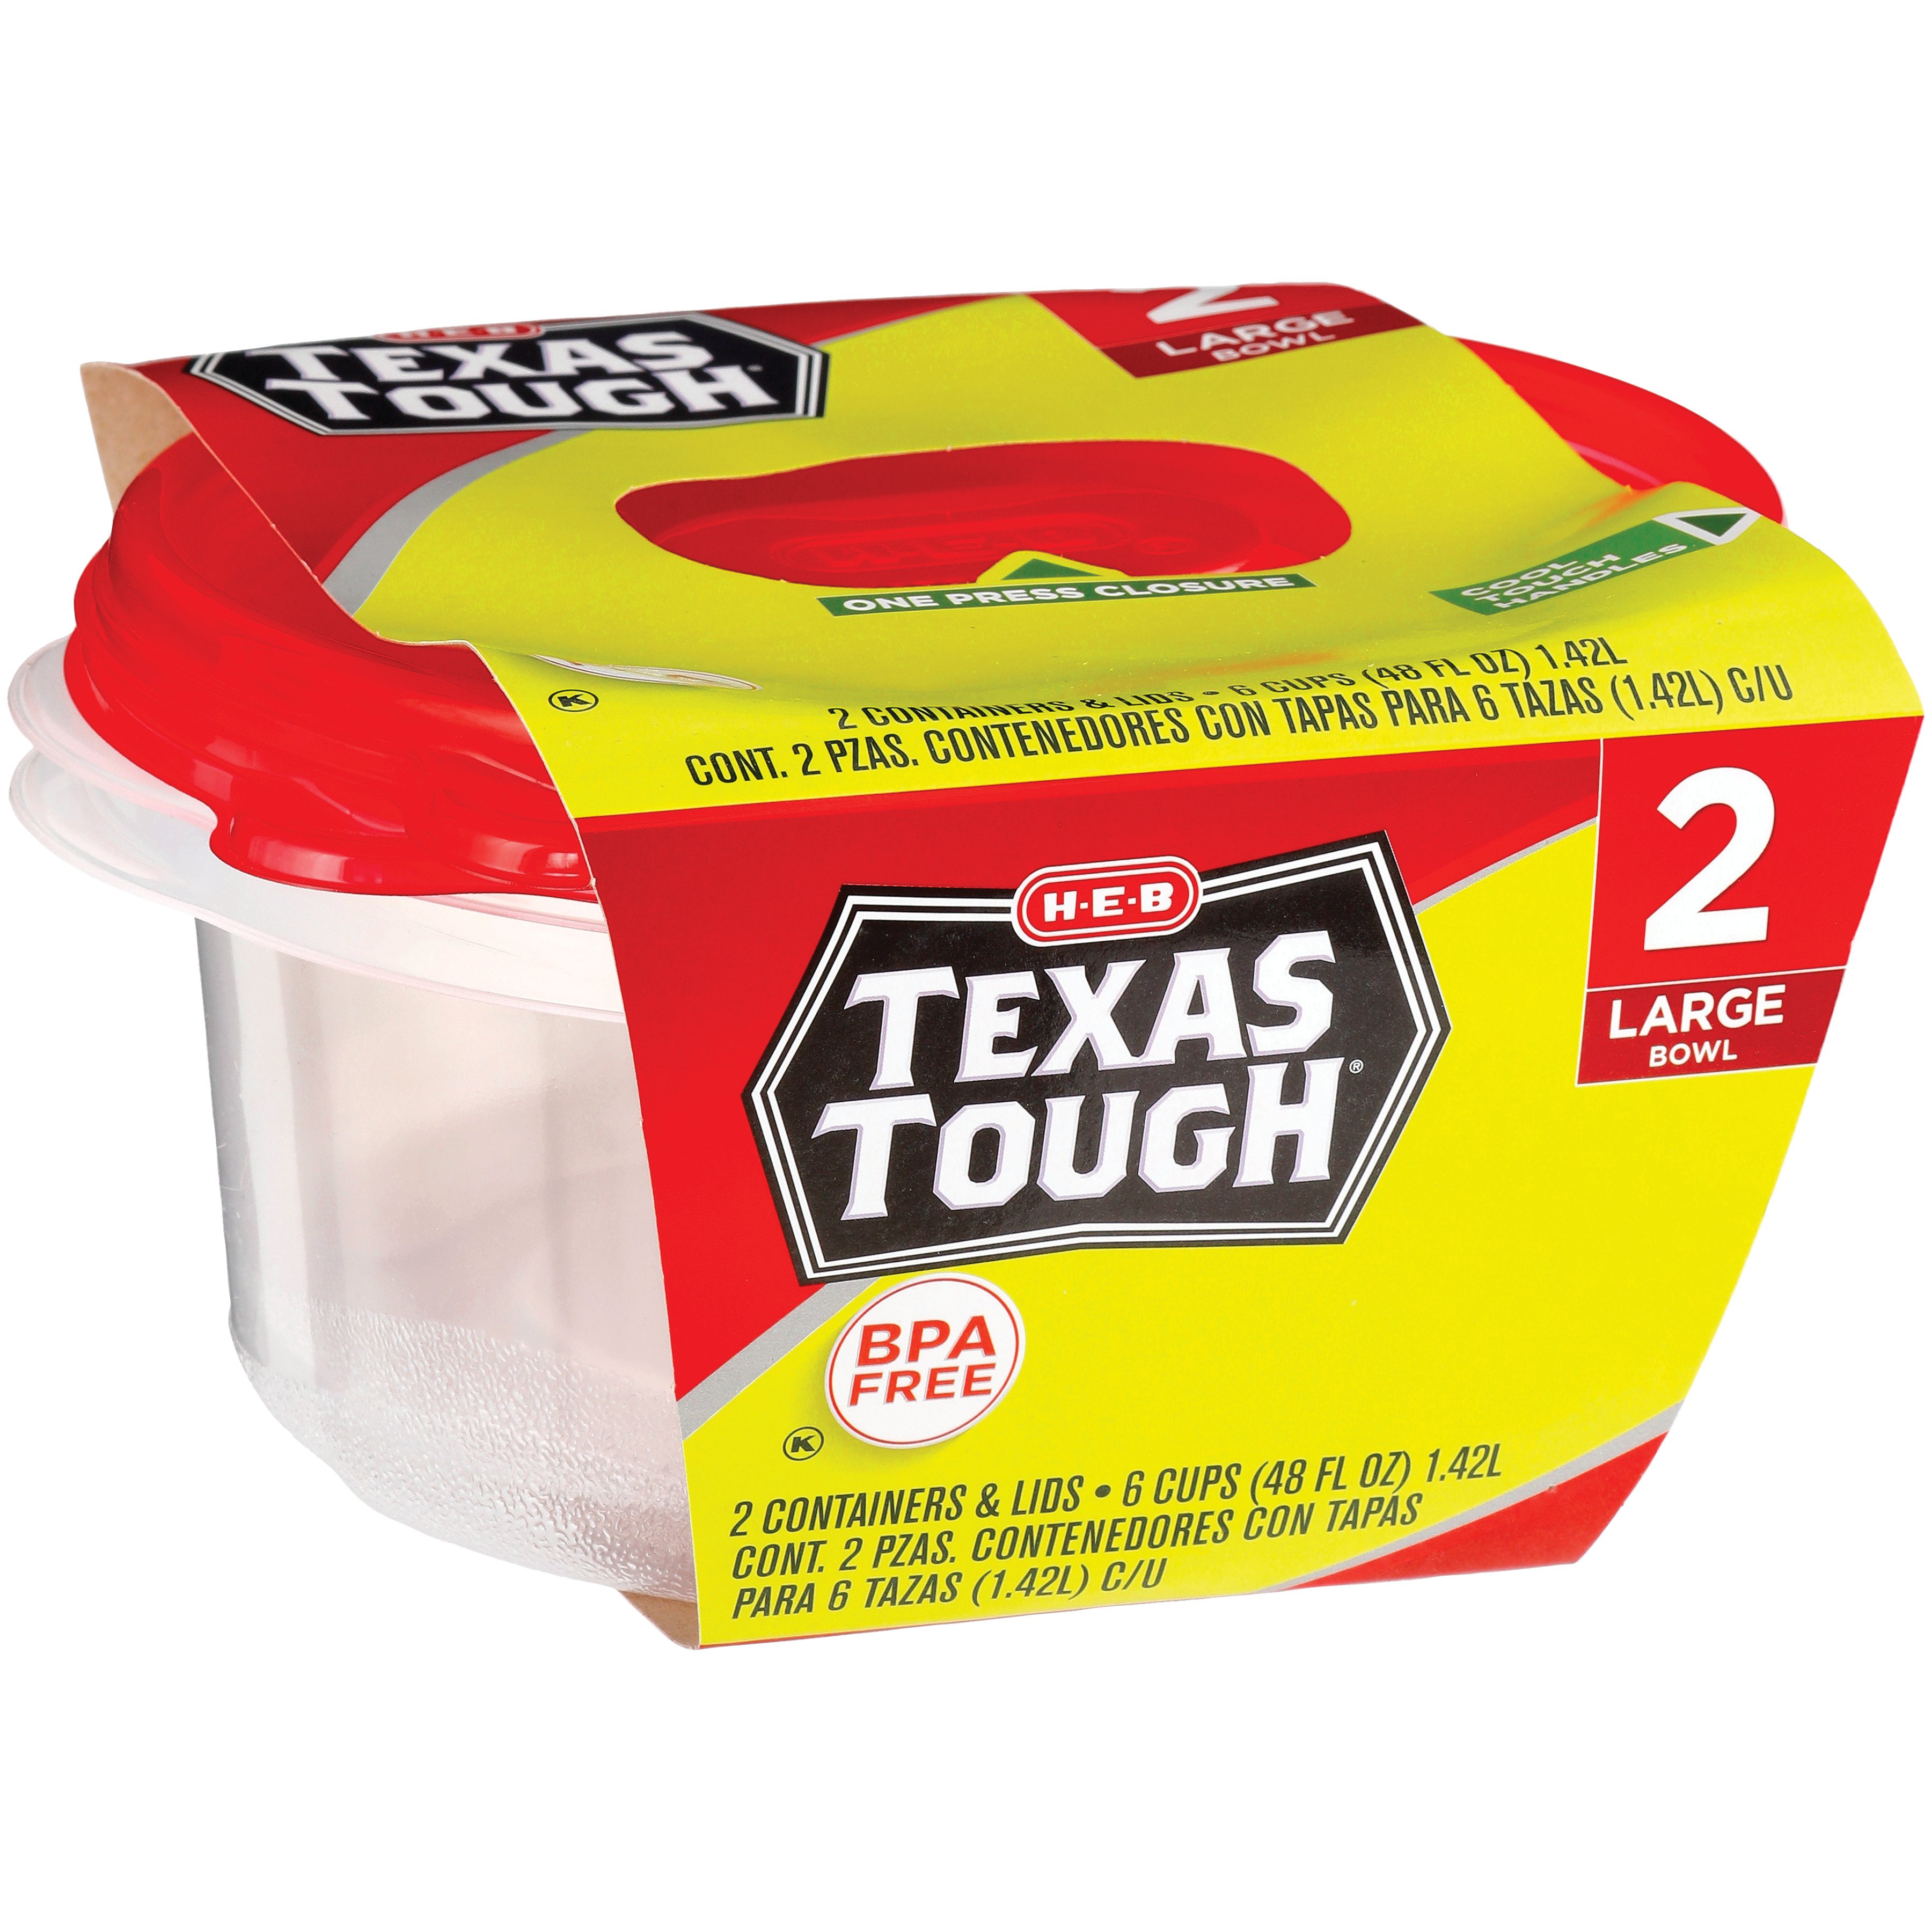 H-E-B Texas Tough Large Reusable Container Bowls with Lids - Shop